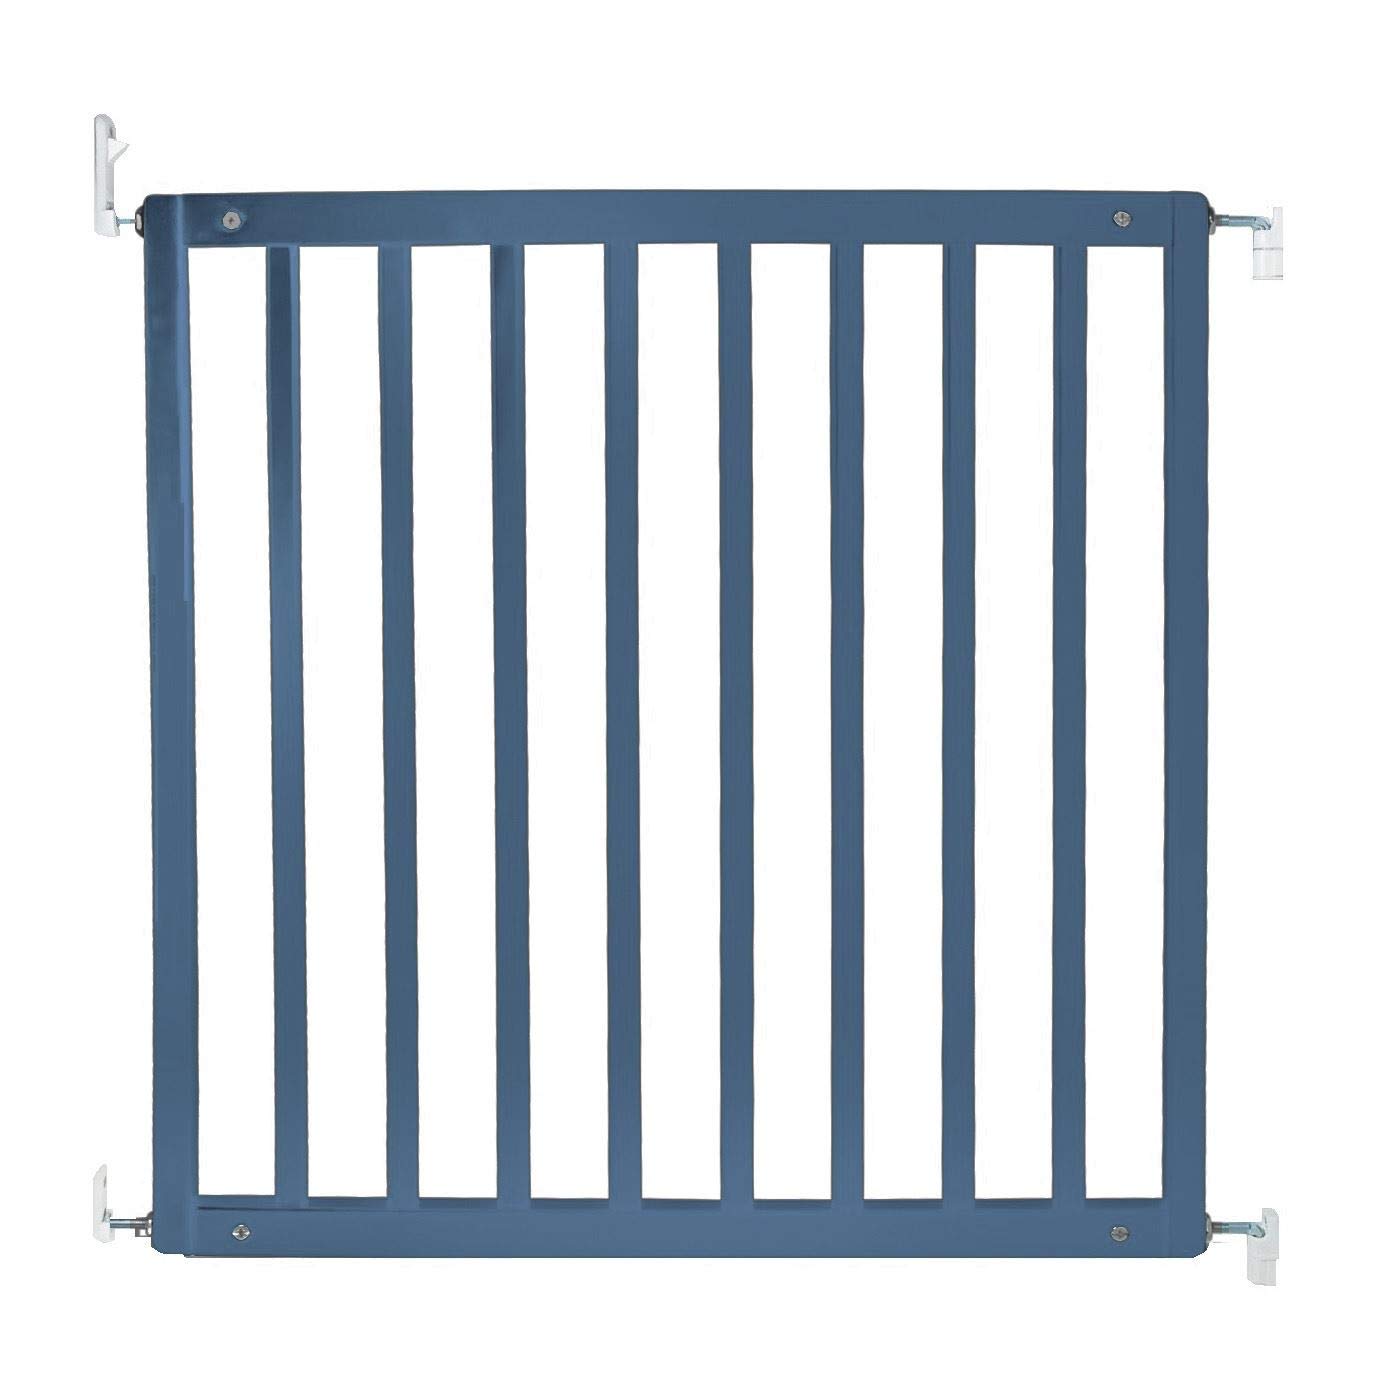 Safetots Simply Secure Wooden Gate 72 cm - 79 cm